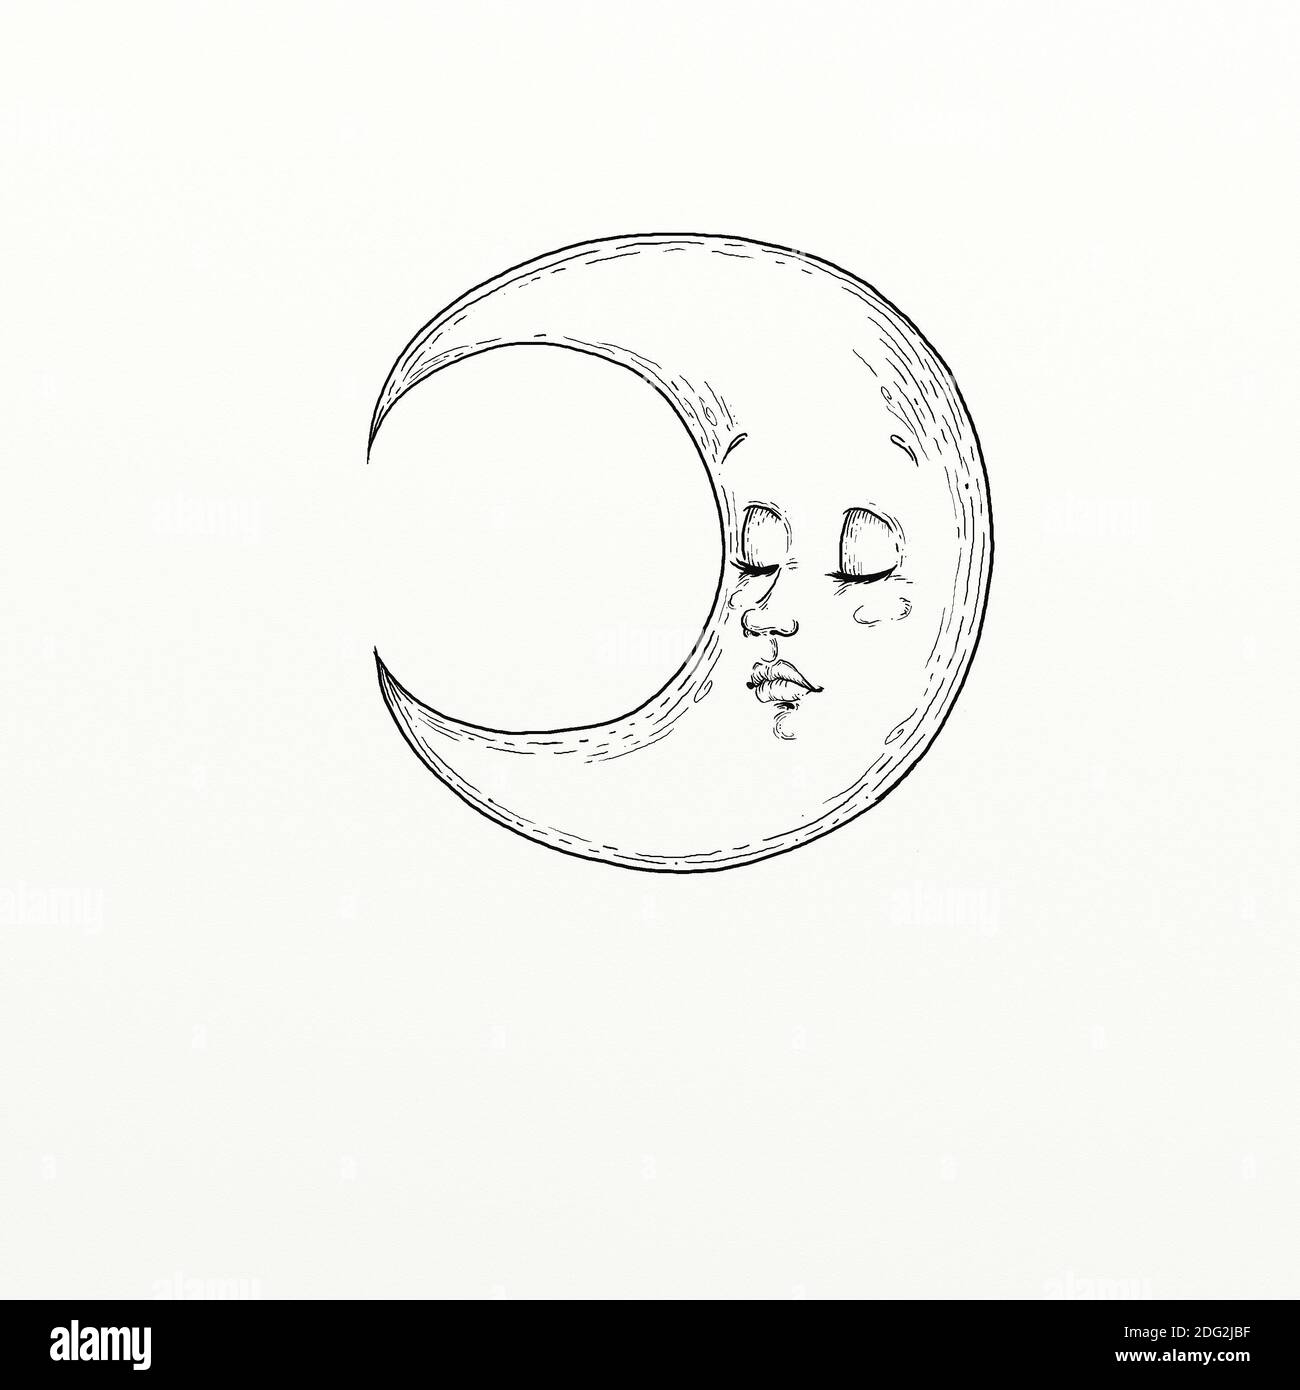 Schwarz-weiße handgegestaltete Illustration, die einen schlafenden Mond darstellt Stockfoto